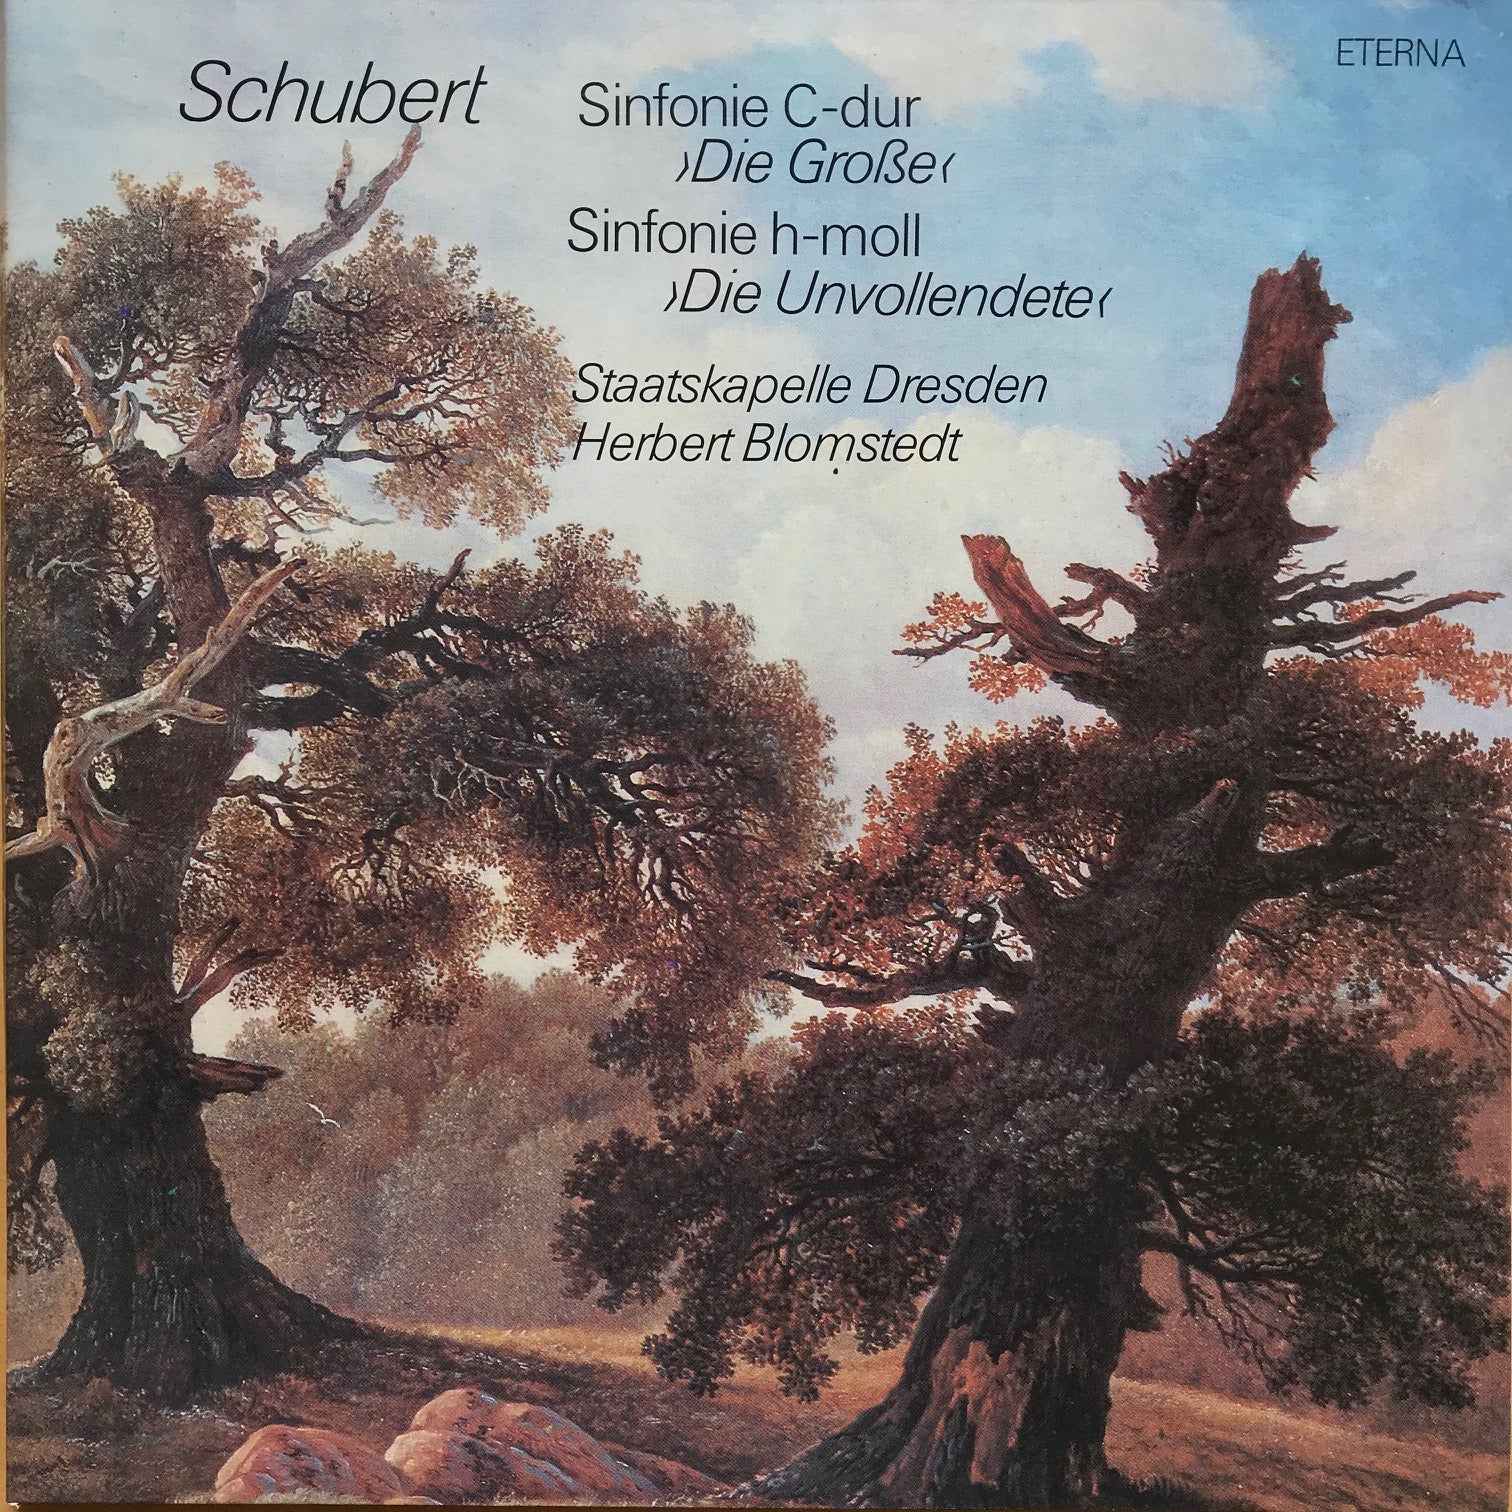 Schubert; Sinfonie C-dur "die Große"  Sinfonie h-moll "Die Unvollendete" LP